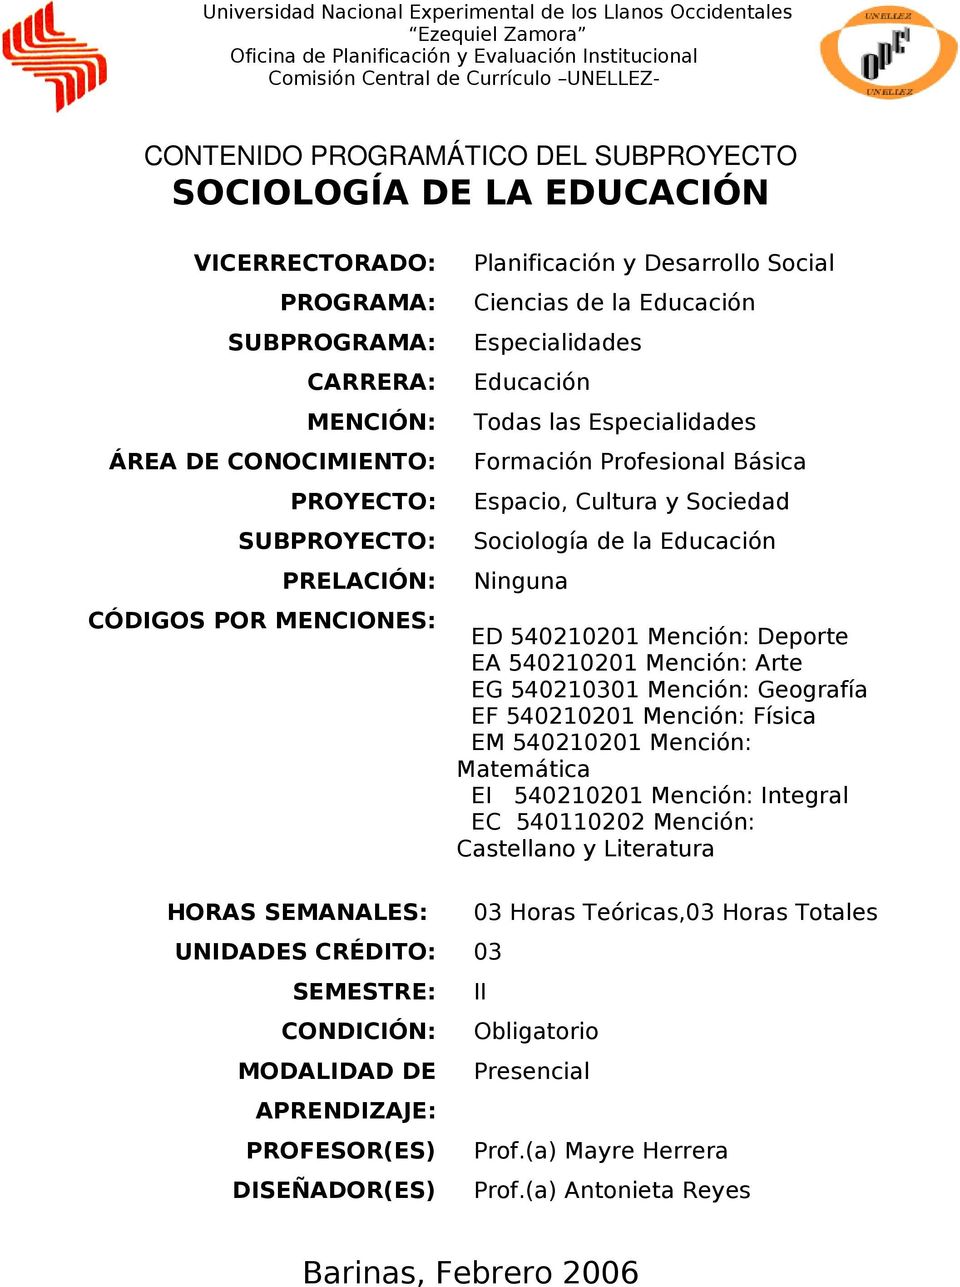 Desarrollo Social Ciencias de la Educación Especialidades Educación Todas las Especialidades Formación Profesional Básica Espacio, Cultura y Sociedad Sociología de la Educación Ninguna ED 540210201